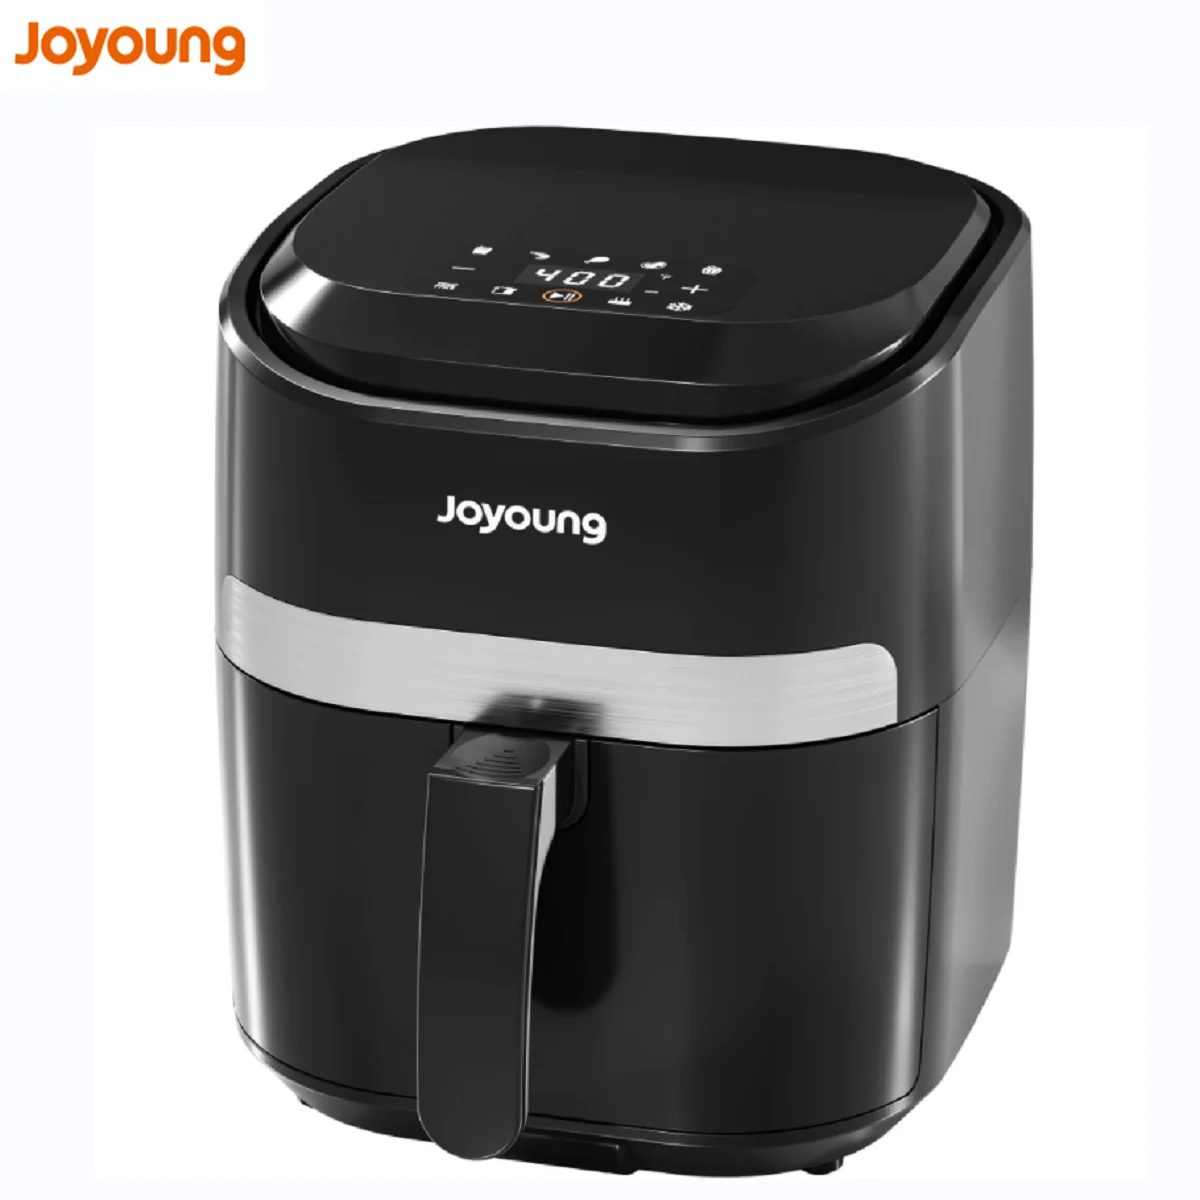 Joyoung - Воздушная Фритюрница с горячей духовкой, Светодиодный экран с 1 сенсорным экраном, переключатель от ℃ до ℉, Корзина с антипригарным покрытием, на 93% меньше жира, 8 в 1, 4,8 Qt